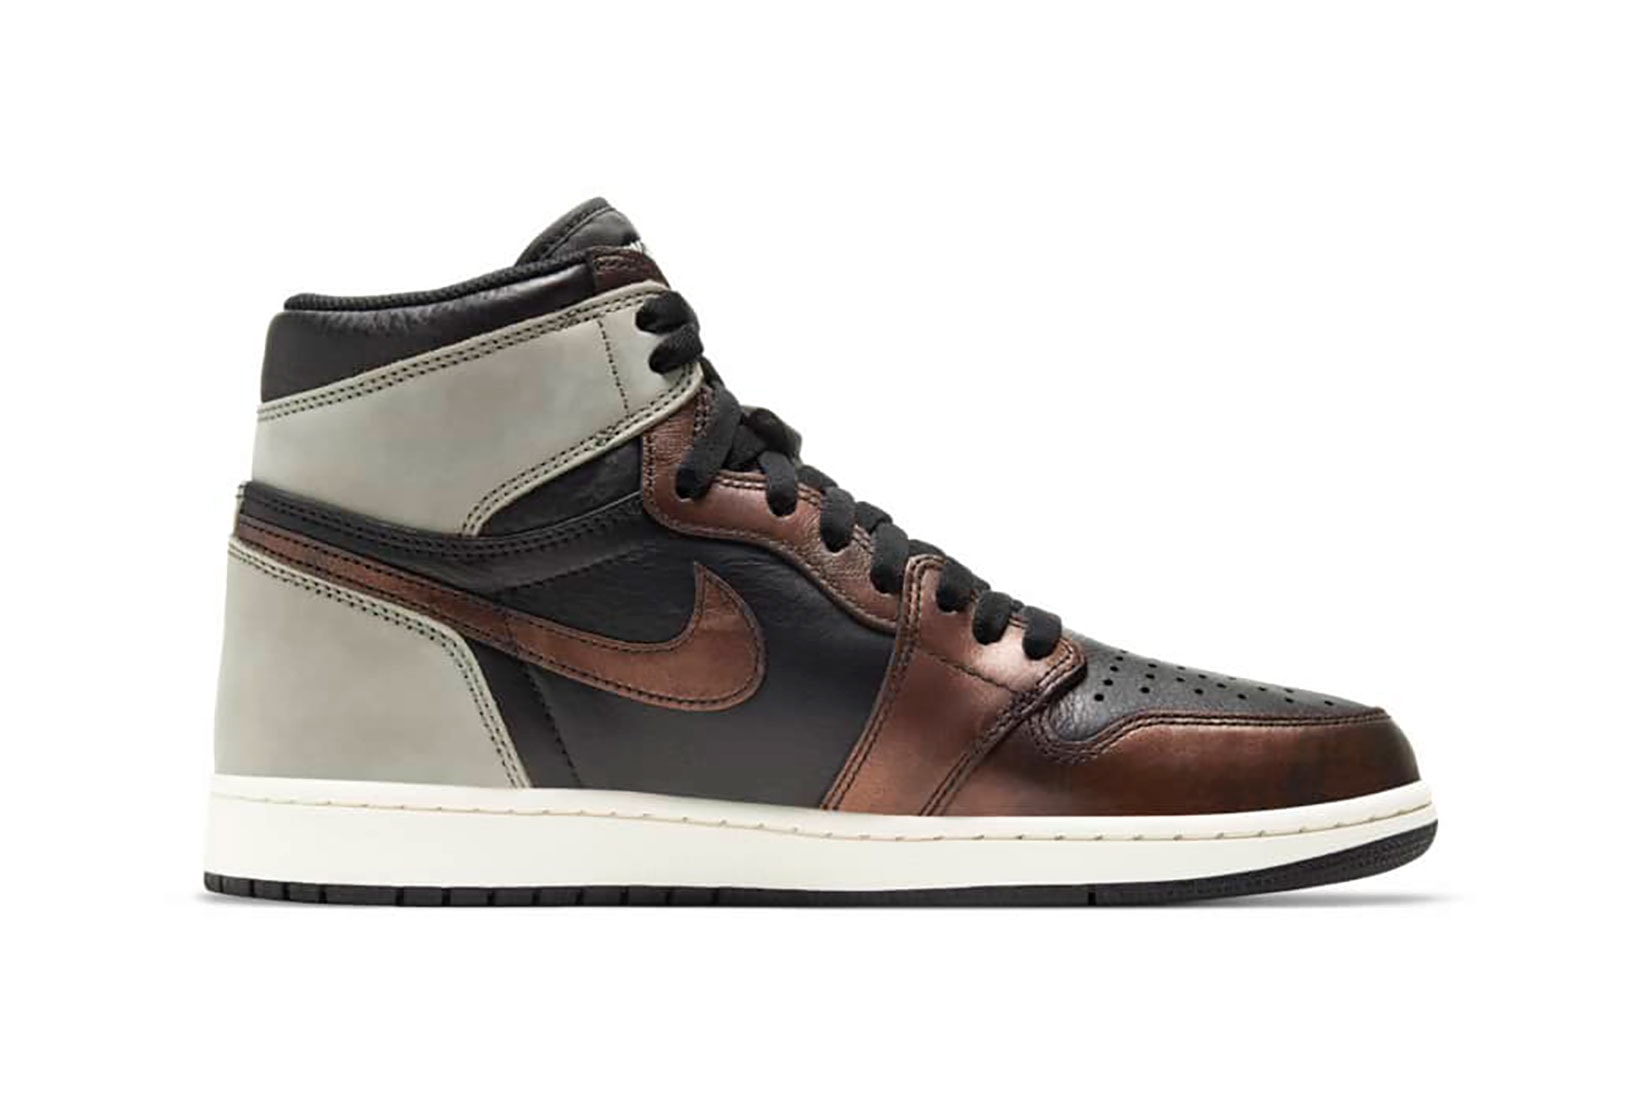 nike air jordan 1 aj1 sneakers rust shadow brown black colorway footwear shoes kicks sneakerhead lateral